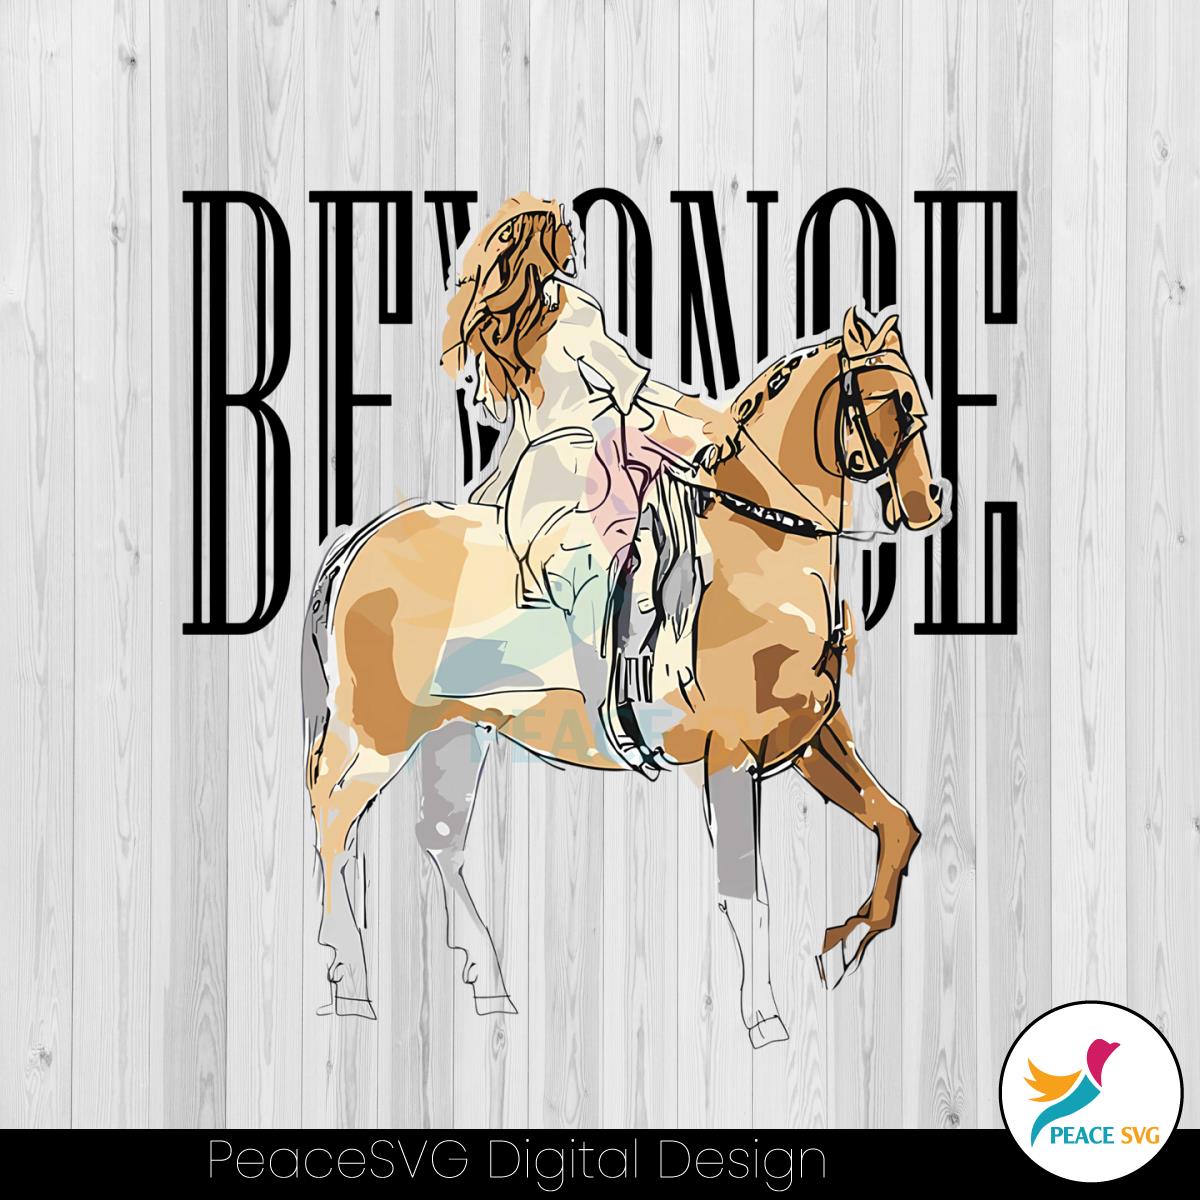 beyonce-rides-horse-renaissance-world-tour-png-download